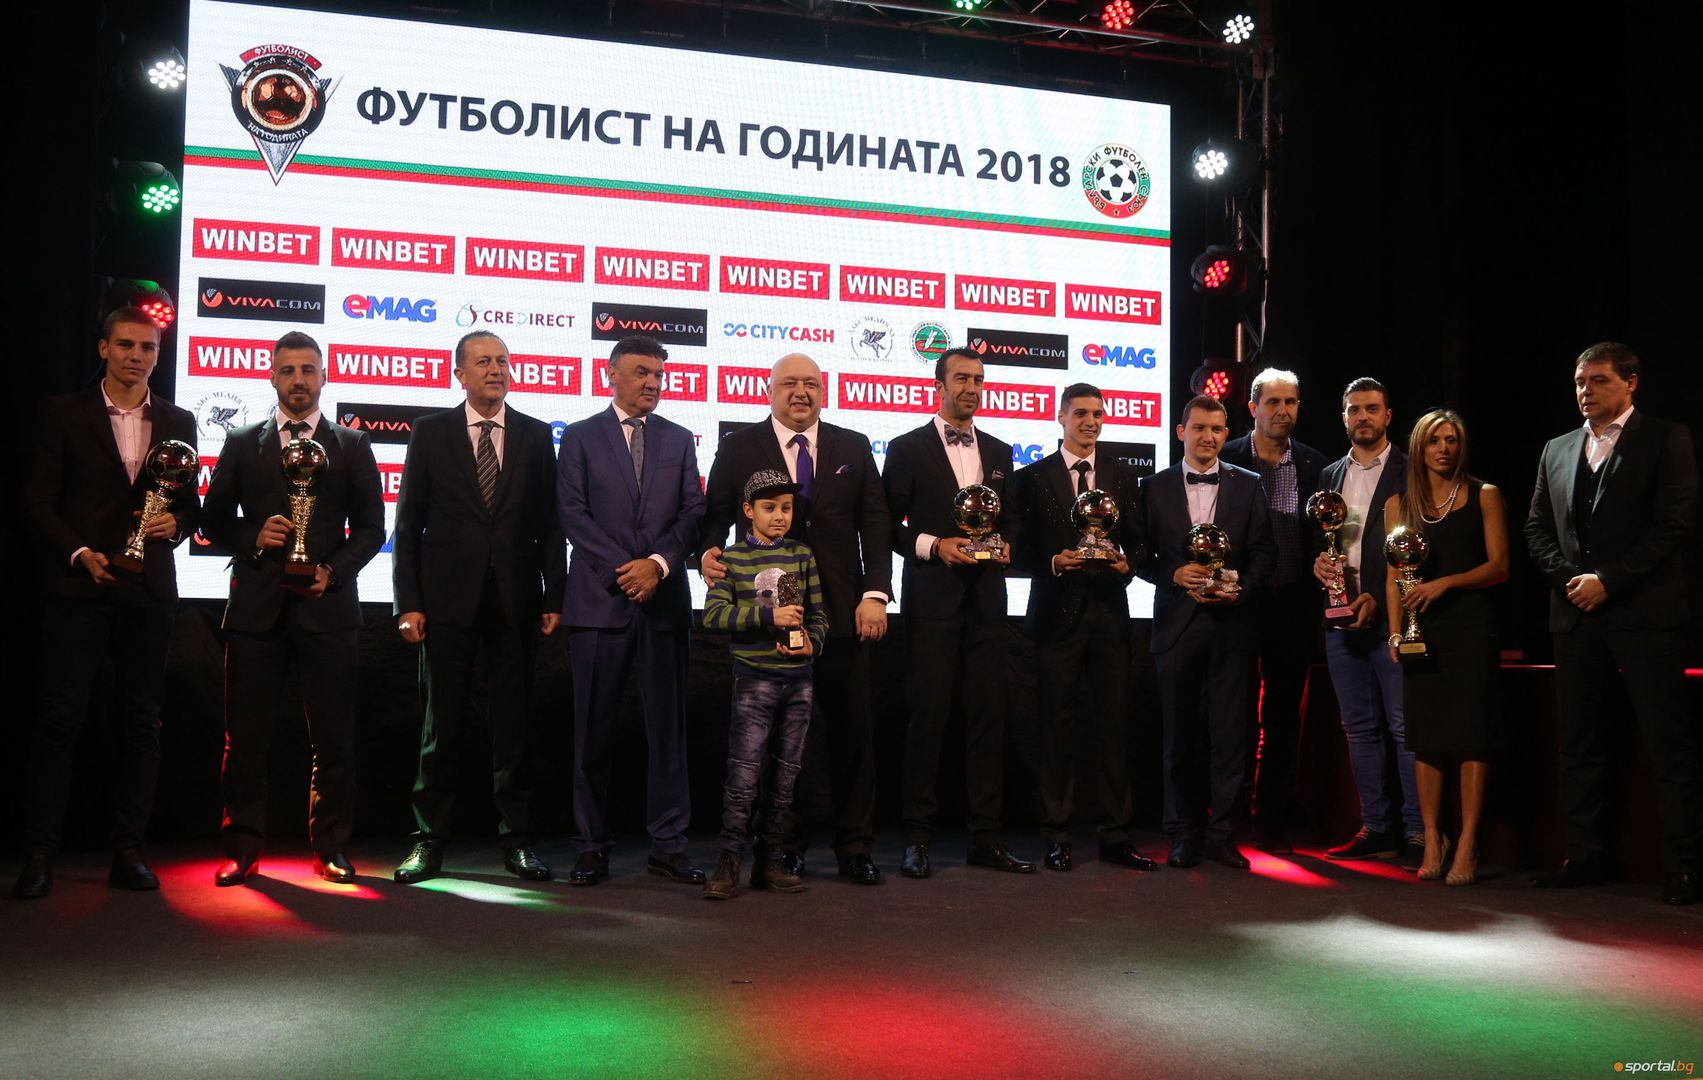 Гости и официални лица преди церемонията "Футболист на годината 2018"